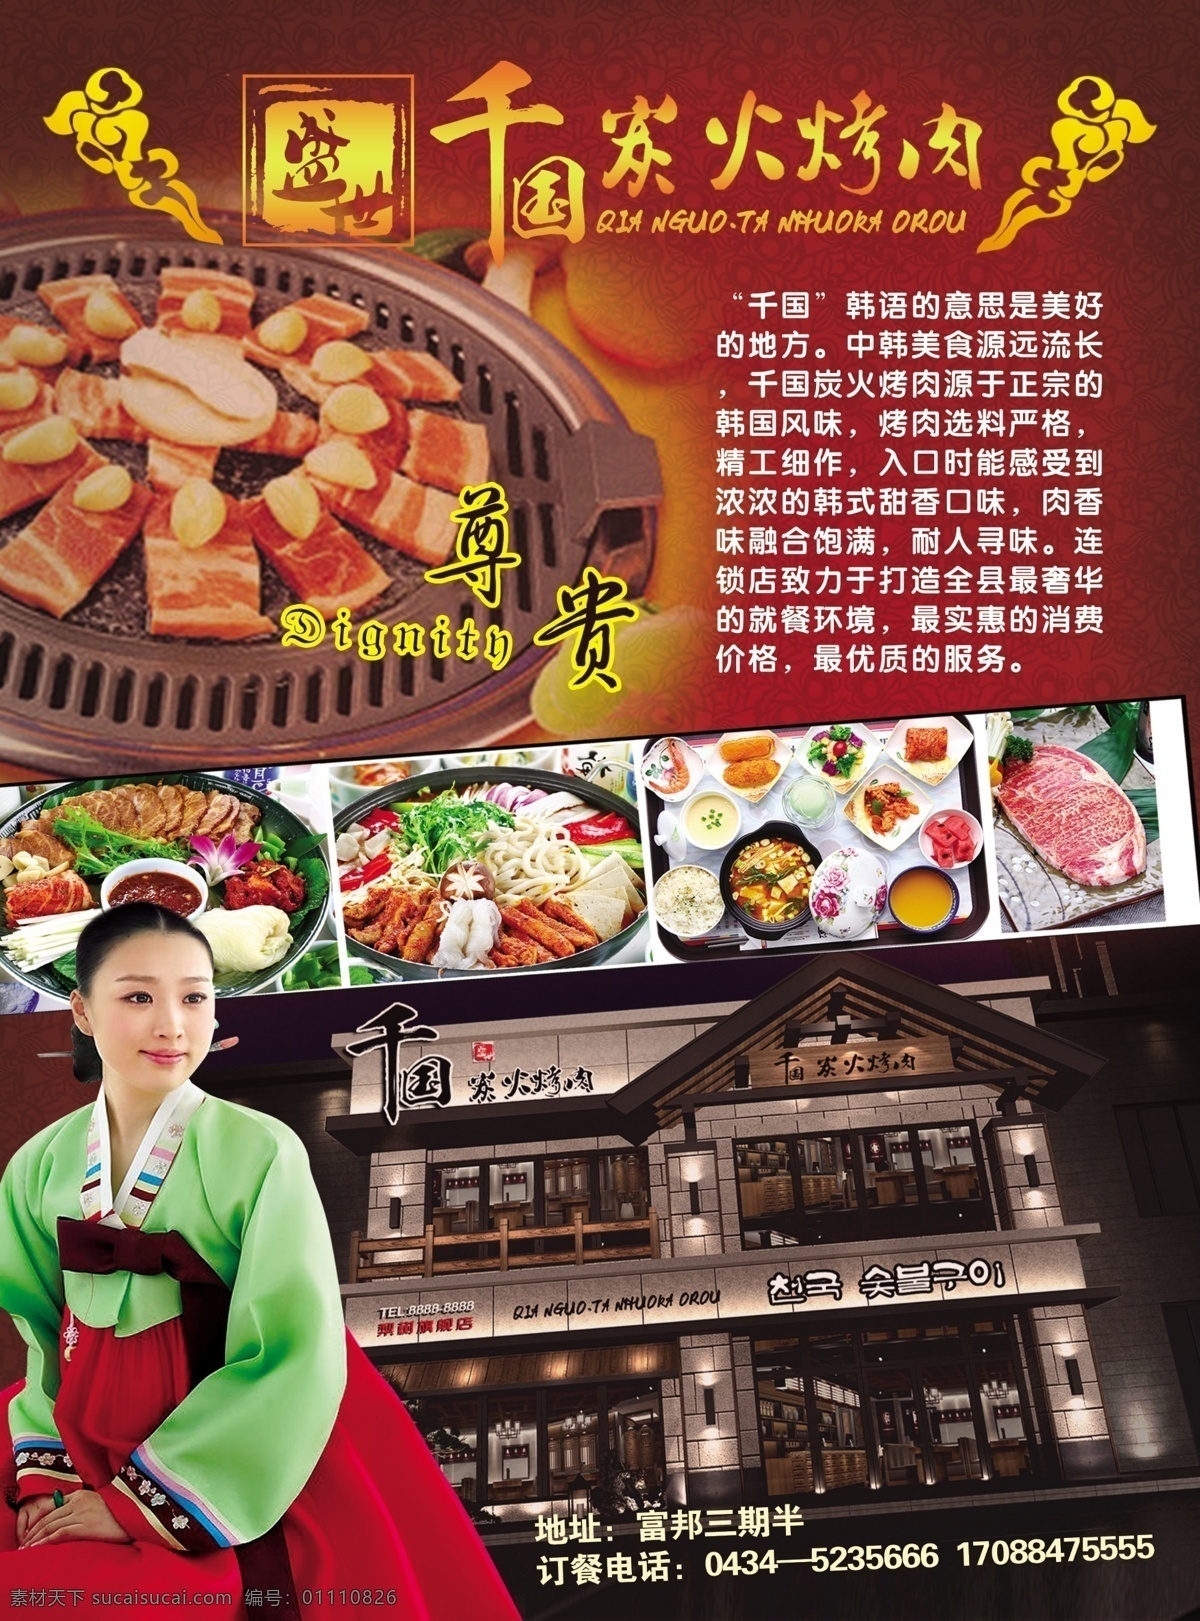 韩式烤肉 烤肉宣传单 烤肉 黑色宣传单 烤肉dm单 韩式菜品 dm宣传单